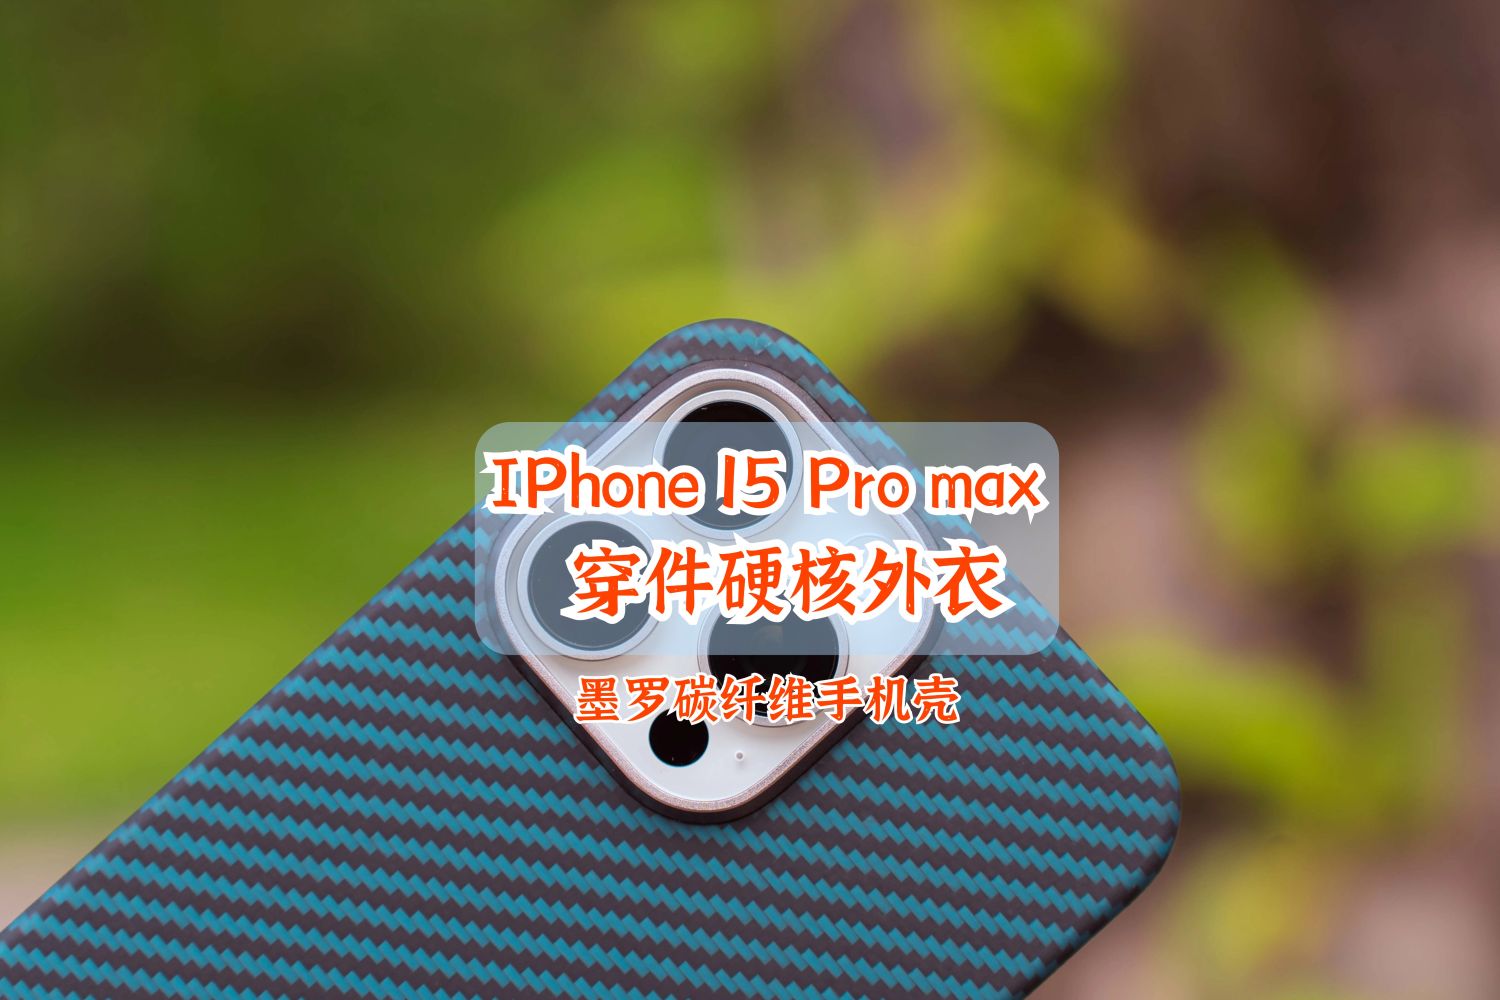 给IPhone 15 Pro max 穿件硬核外衣 